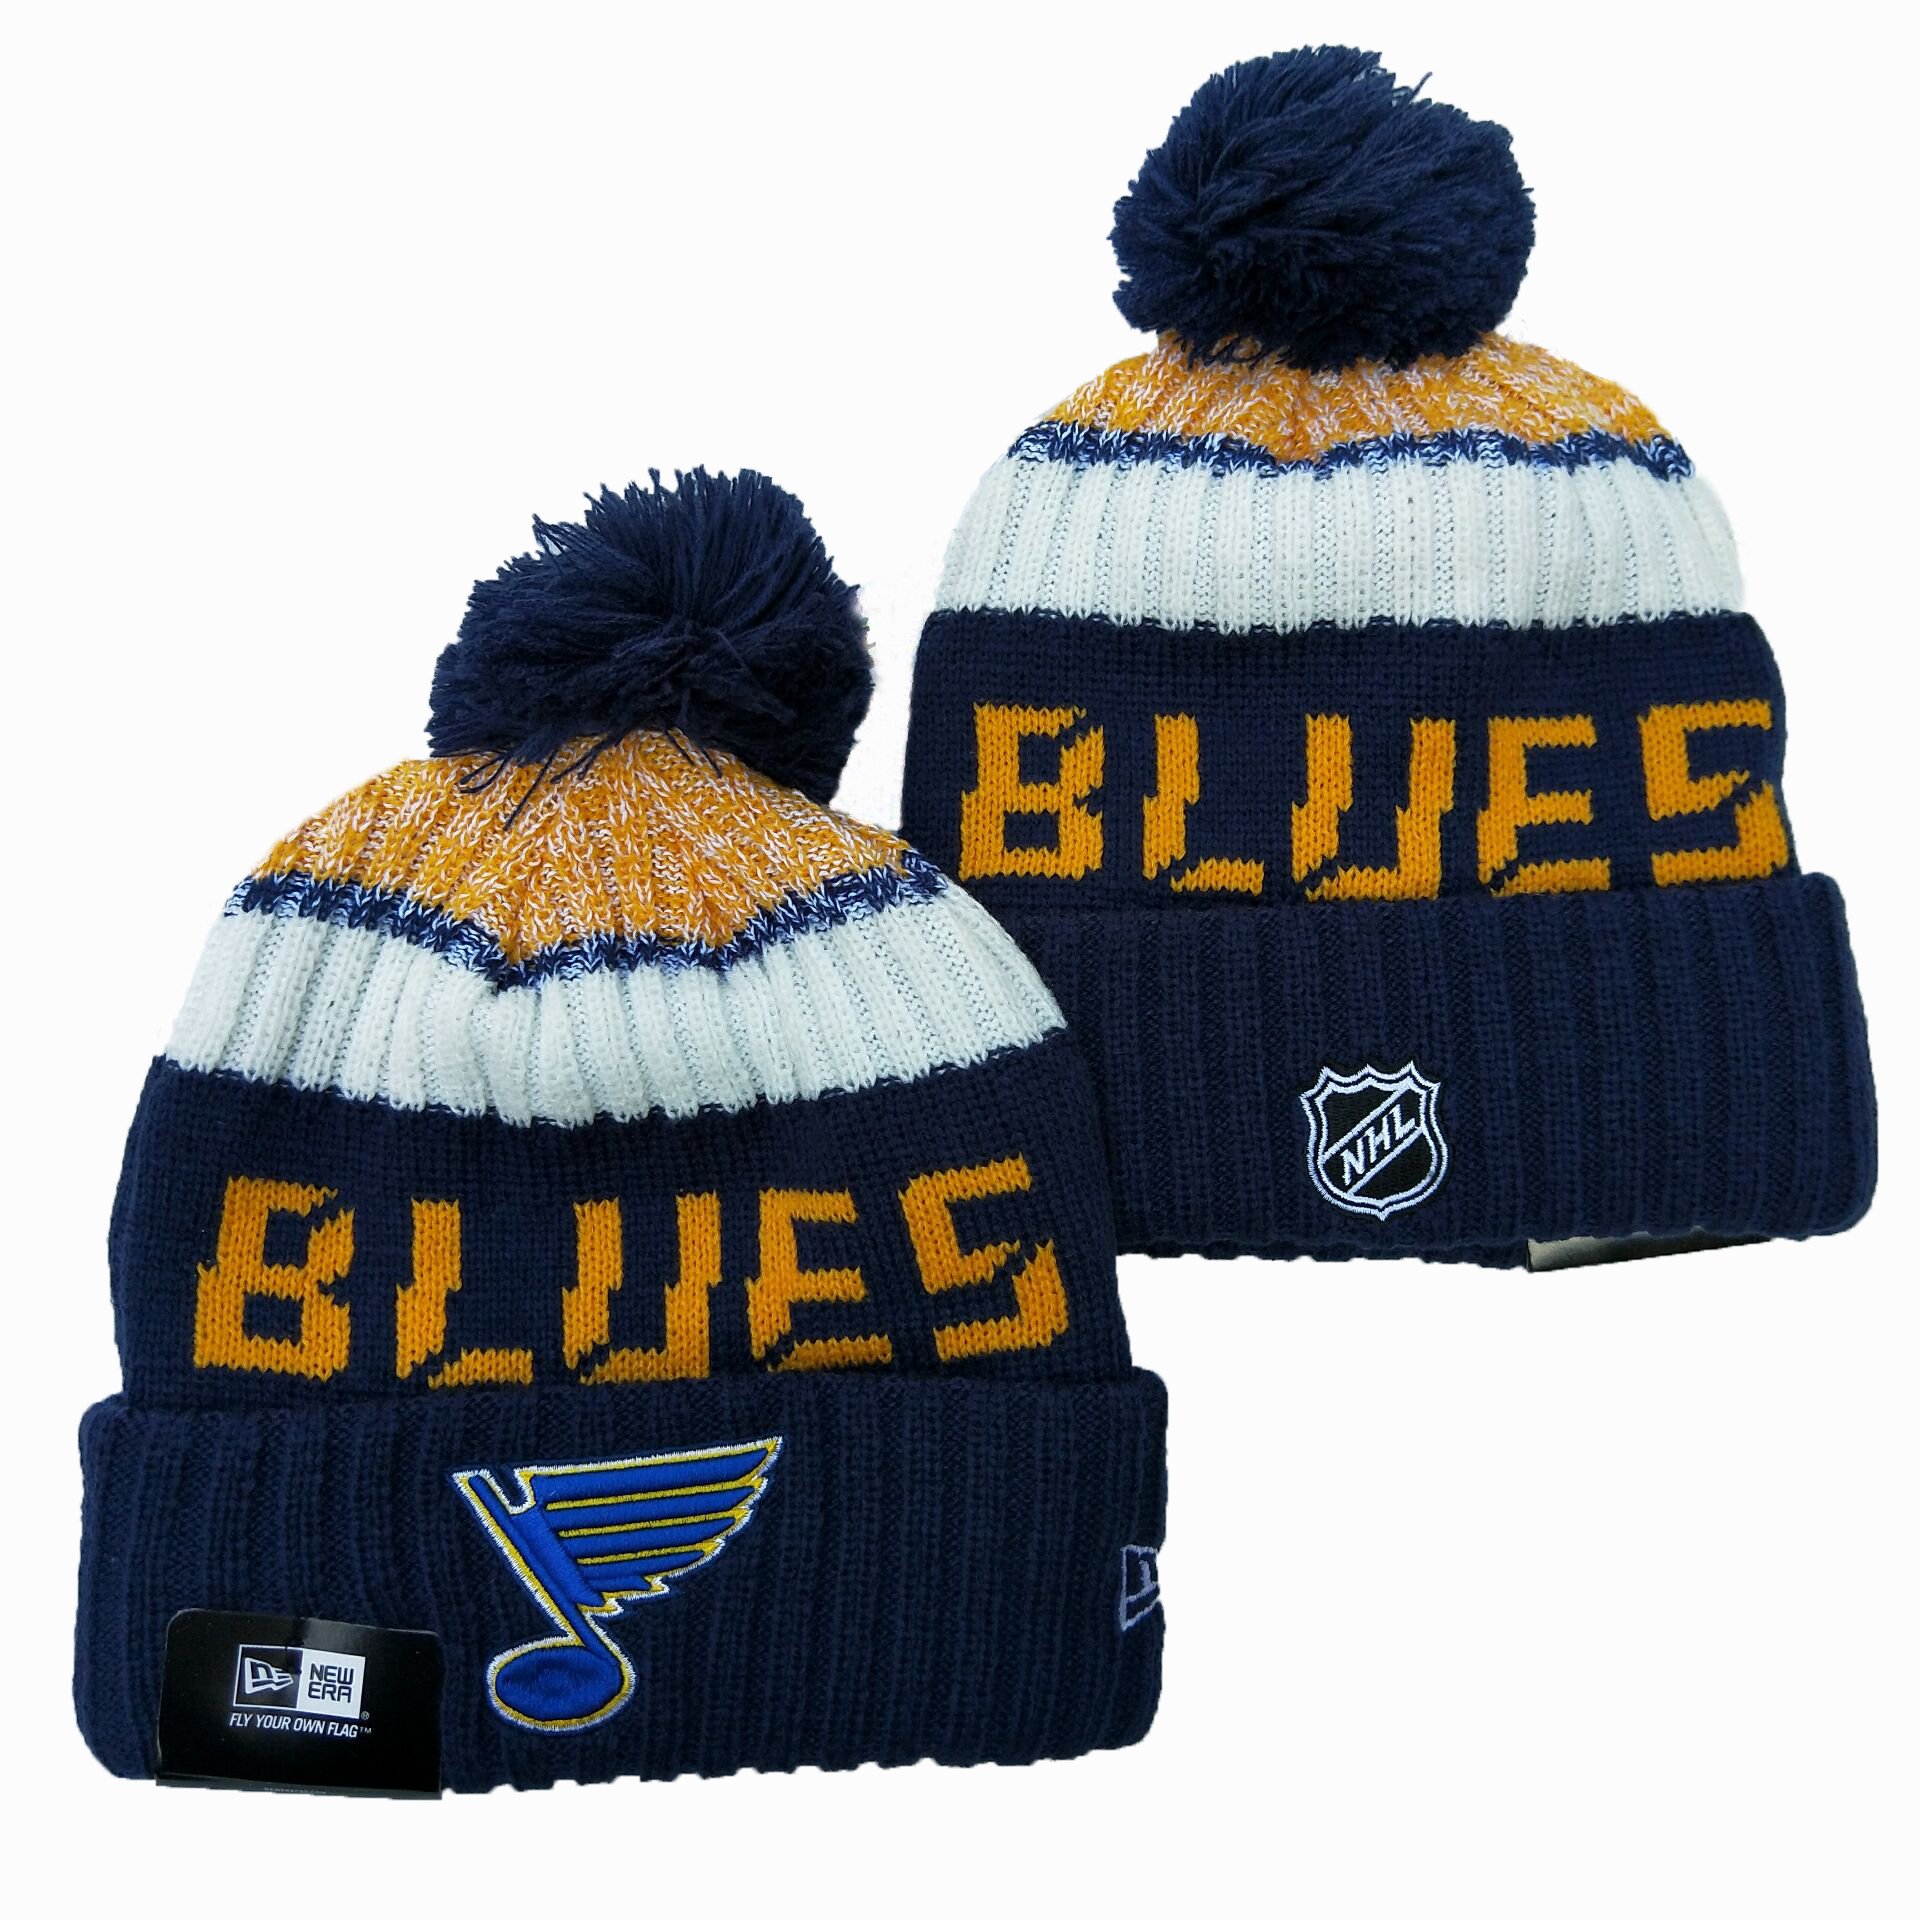 St. Louis Blues Knit Hats -1